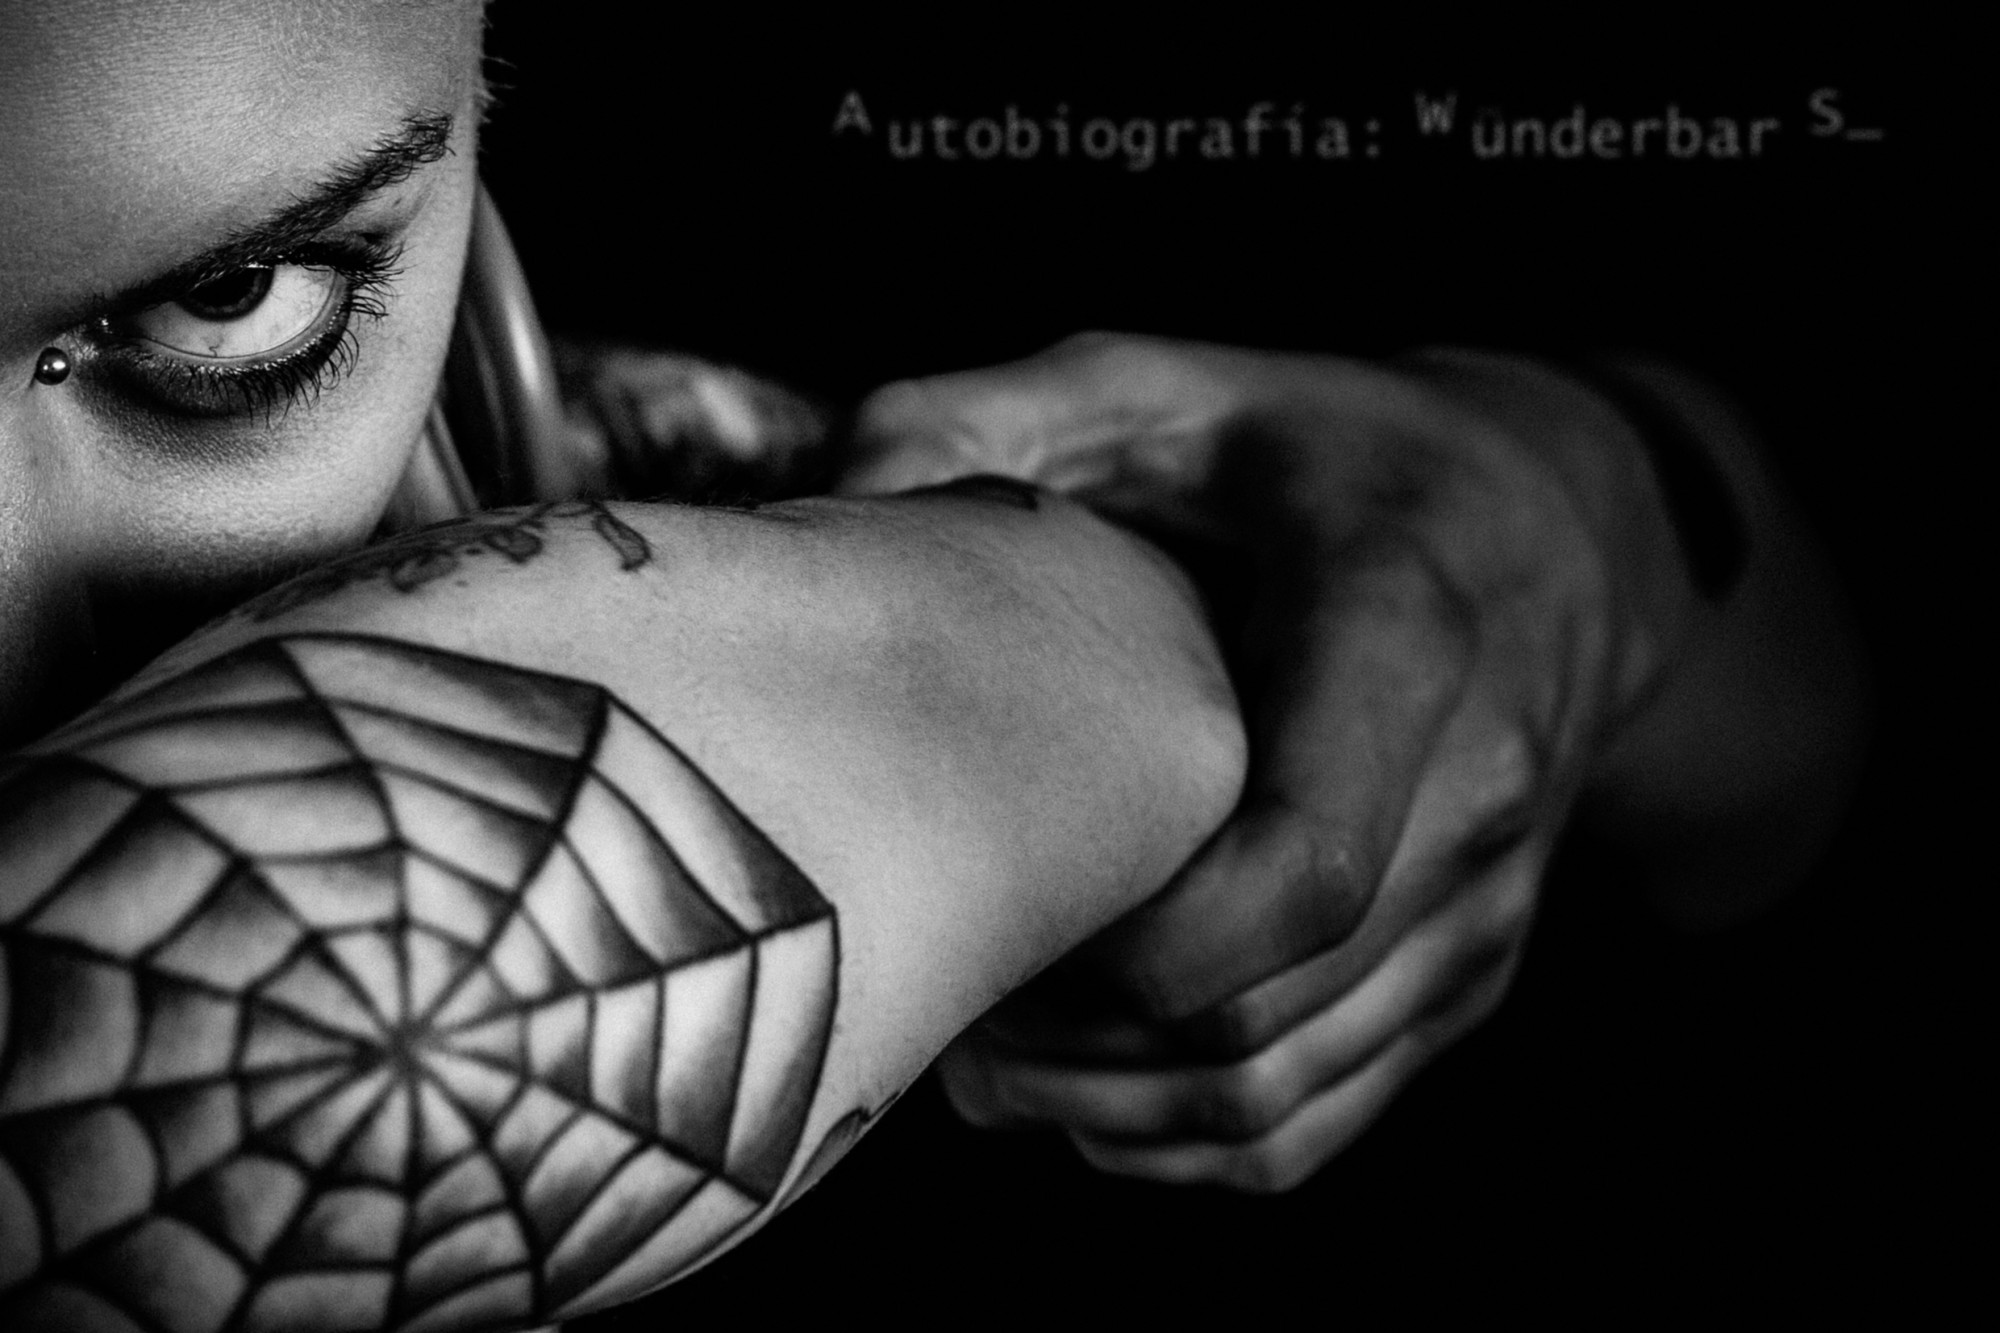 Primer plano, blanco y negro. Modelo con tatuaje de tela de araña en el codo, poniendose el brazo como un antifaz.